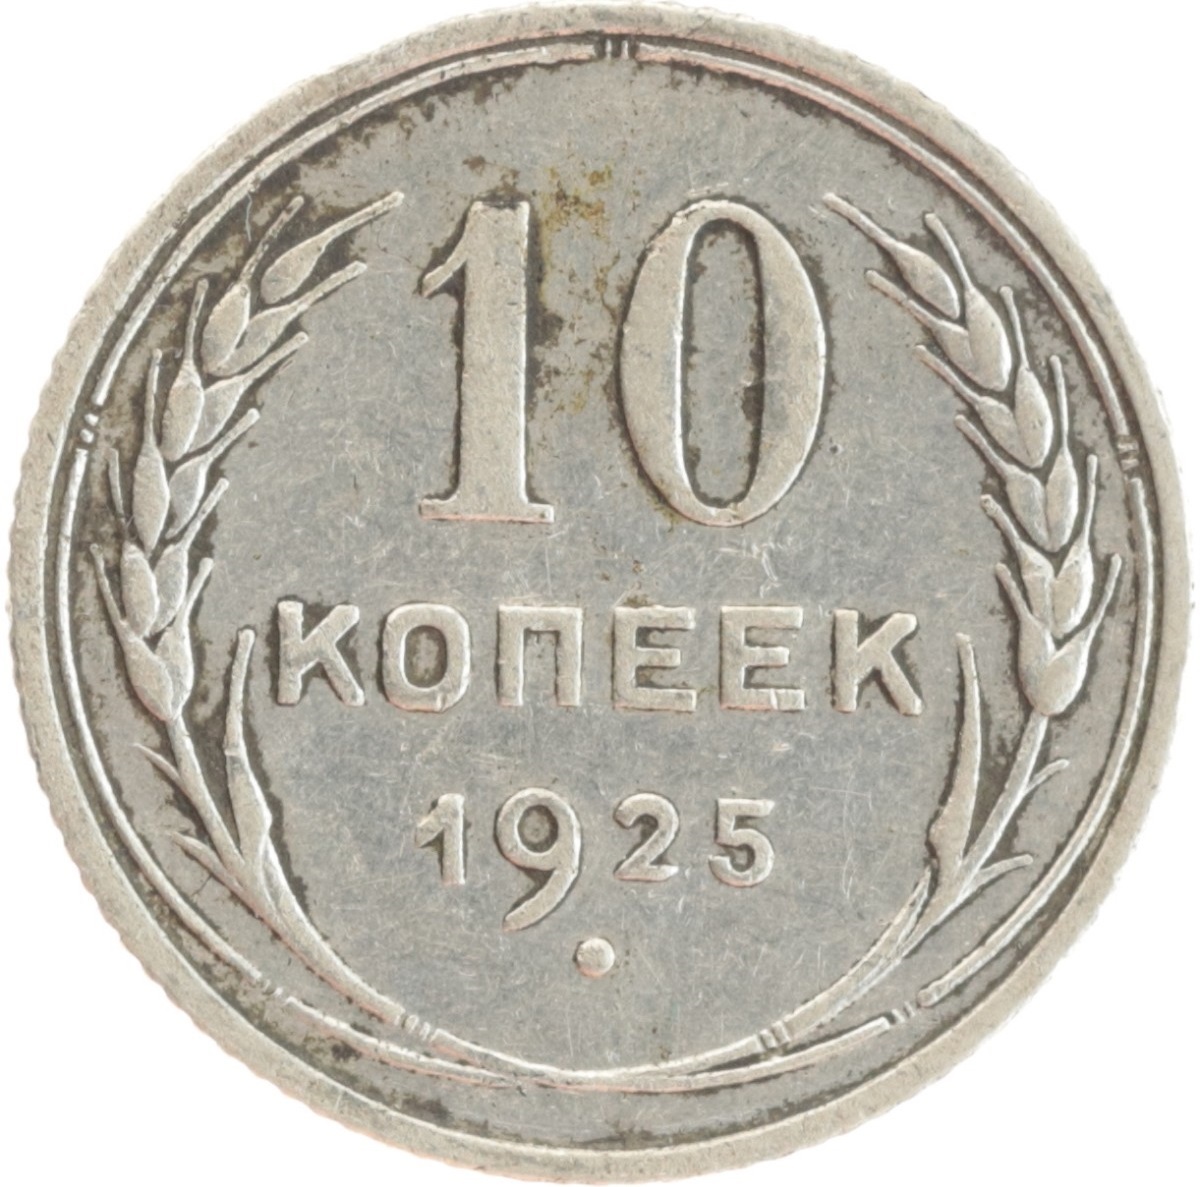 20 копеек пятьдесят. 20 Копеек 1927 серебро. 10 Копейка 1928 серебро. 10 Копеек 1925 серебро. Монета СССР 20 копеек.